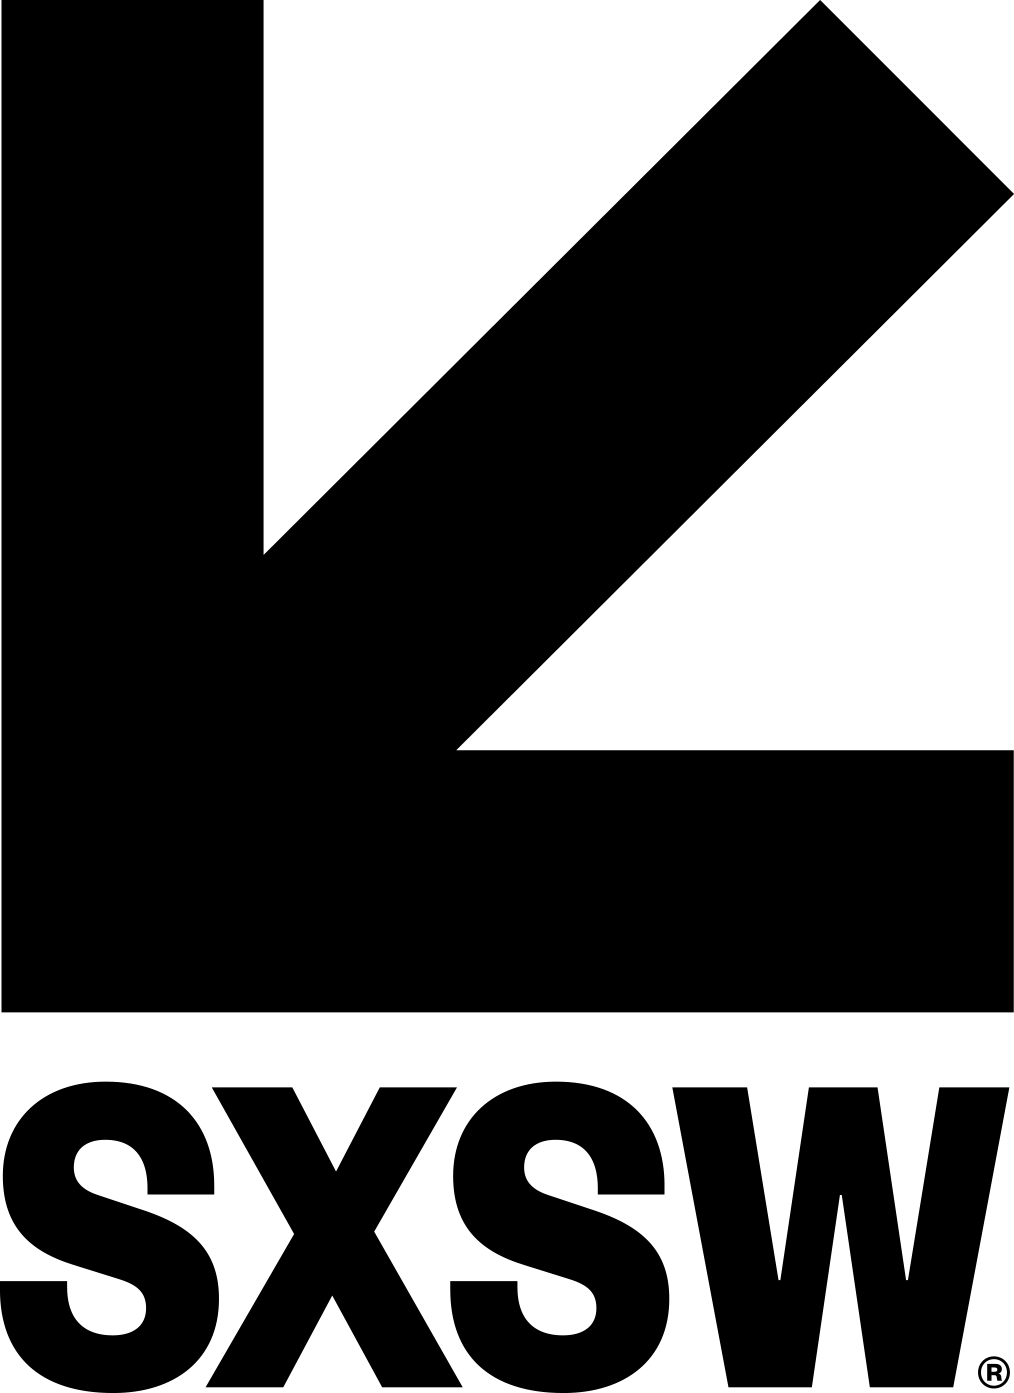 SXSW_logo.png